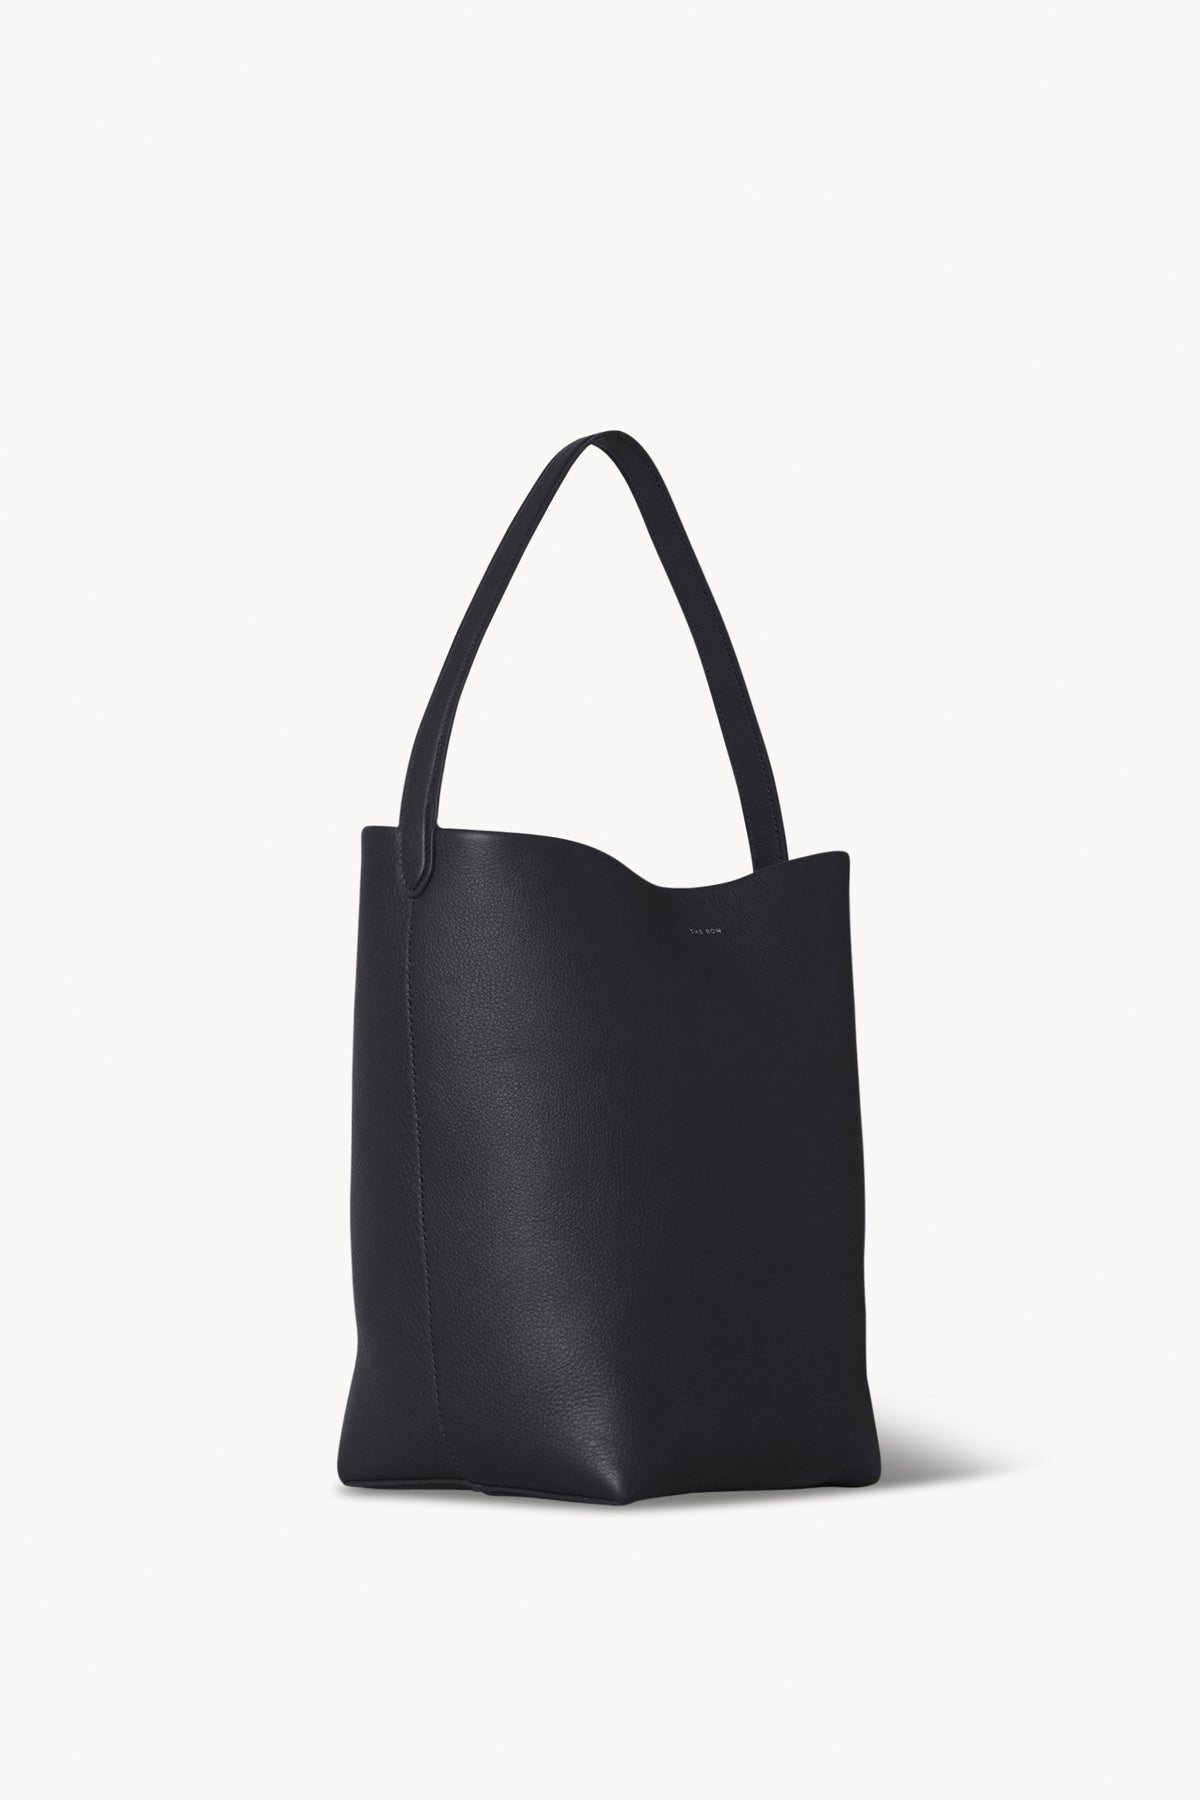 Medium N/S Park Tote Bag in Leather